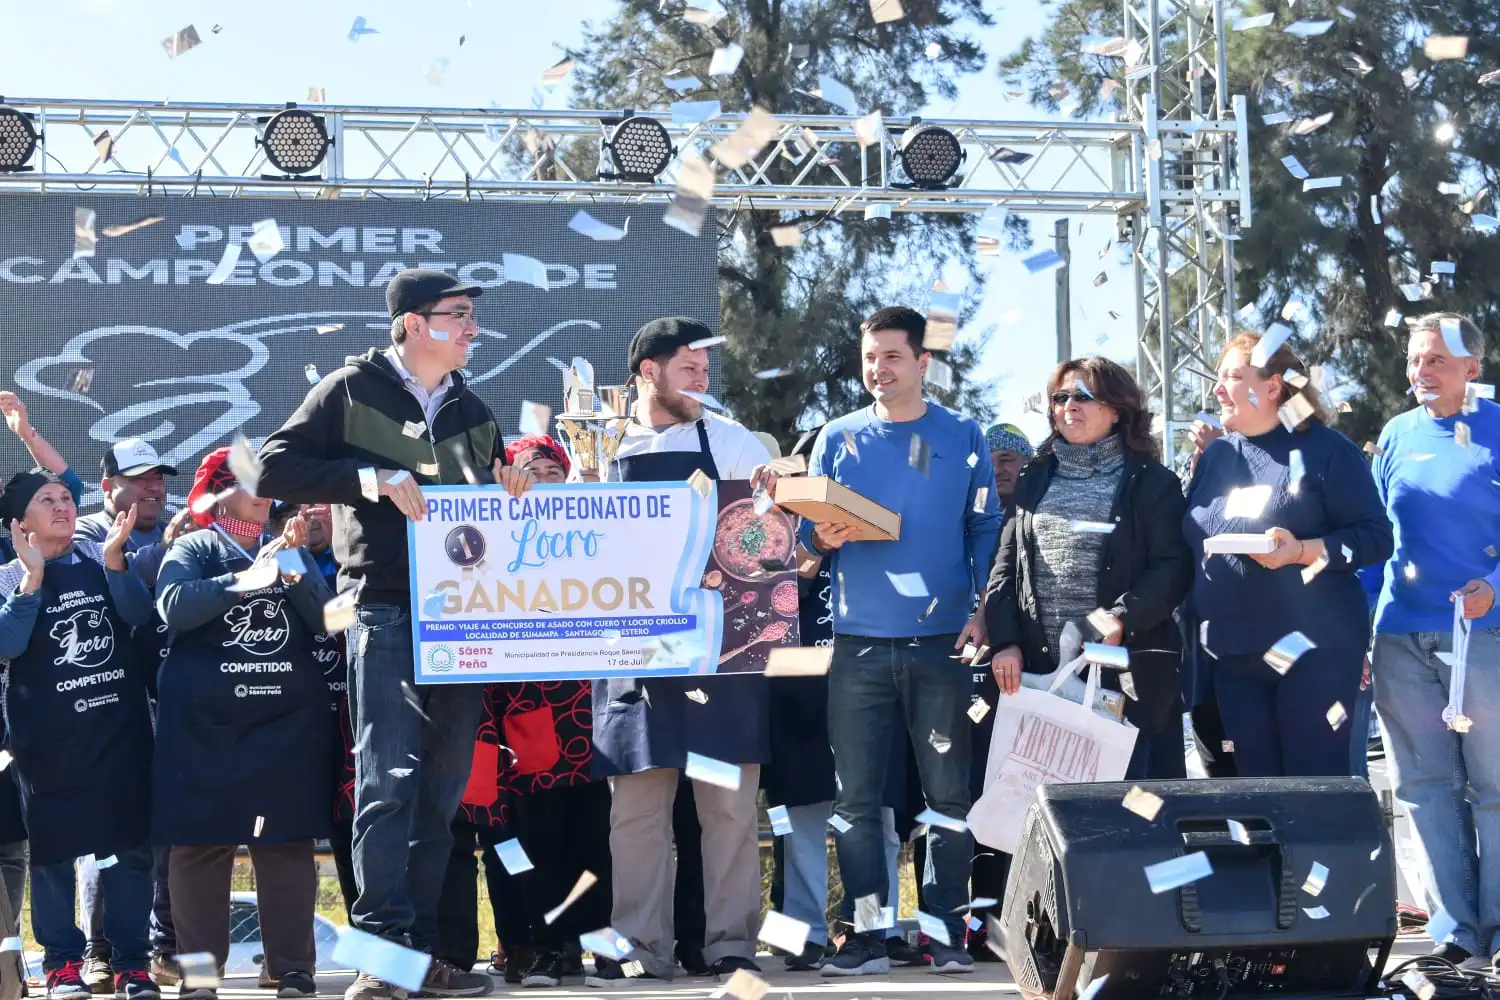 SAENZ PEÑA : Guillermo Staniulis es el ganador del Primer Campeonato de Locro,segundo la Colectividad Checoeslovaca,tercero Mirna Ramirez de Resistencia